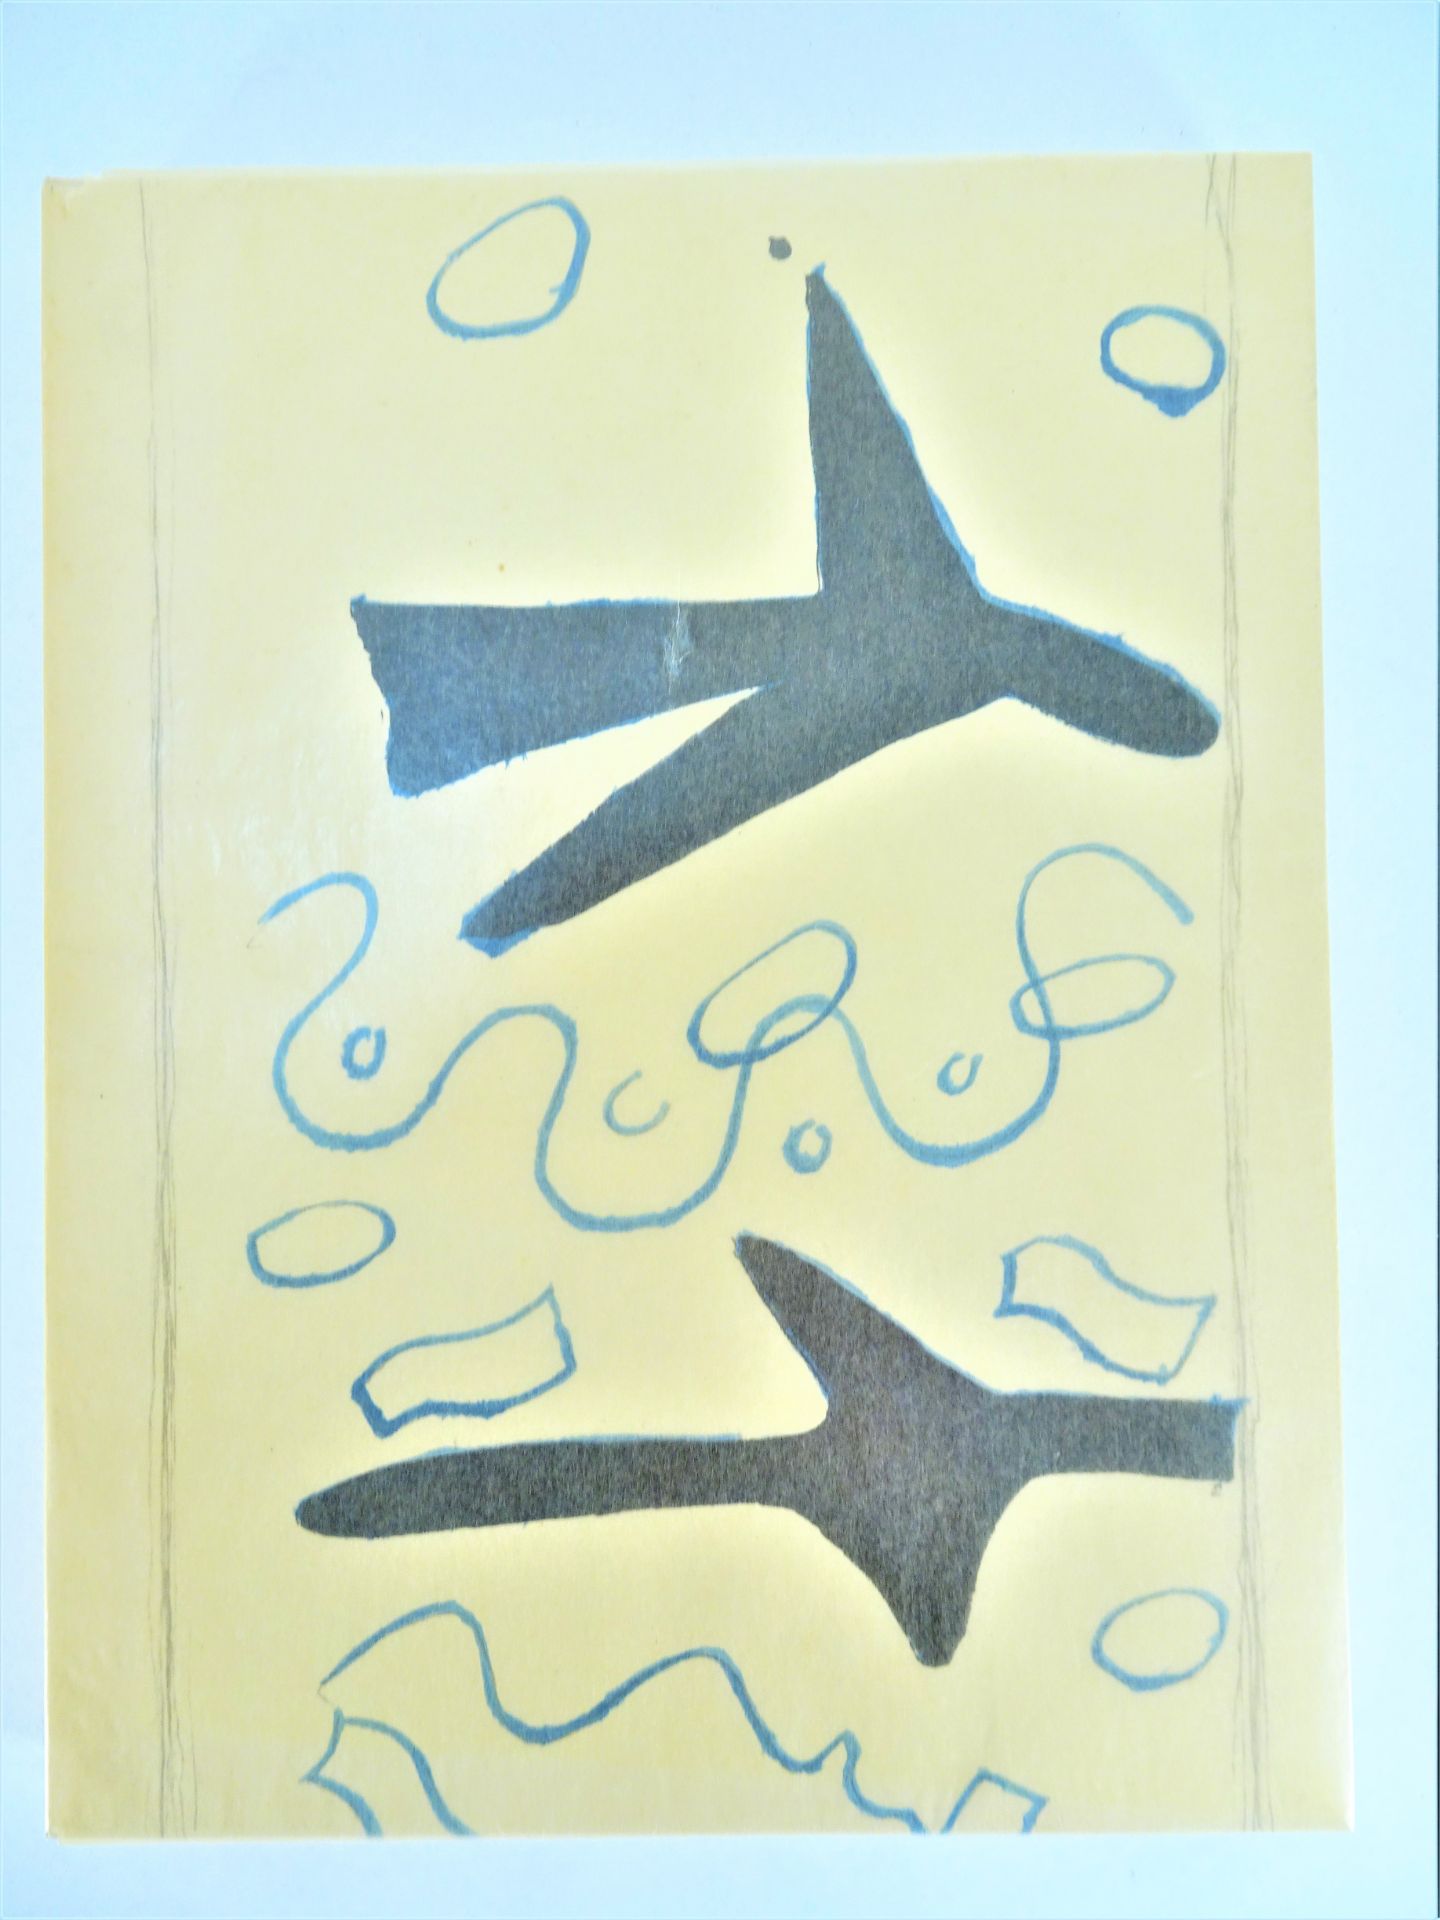 |Art| George Braque, "Braque lithographe", 1963, édition limitée. Fernand Mourlot, catalogue